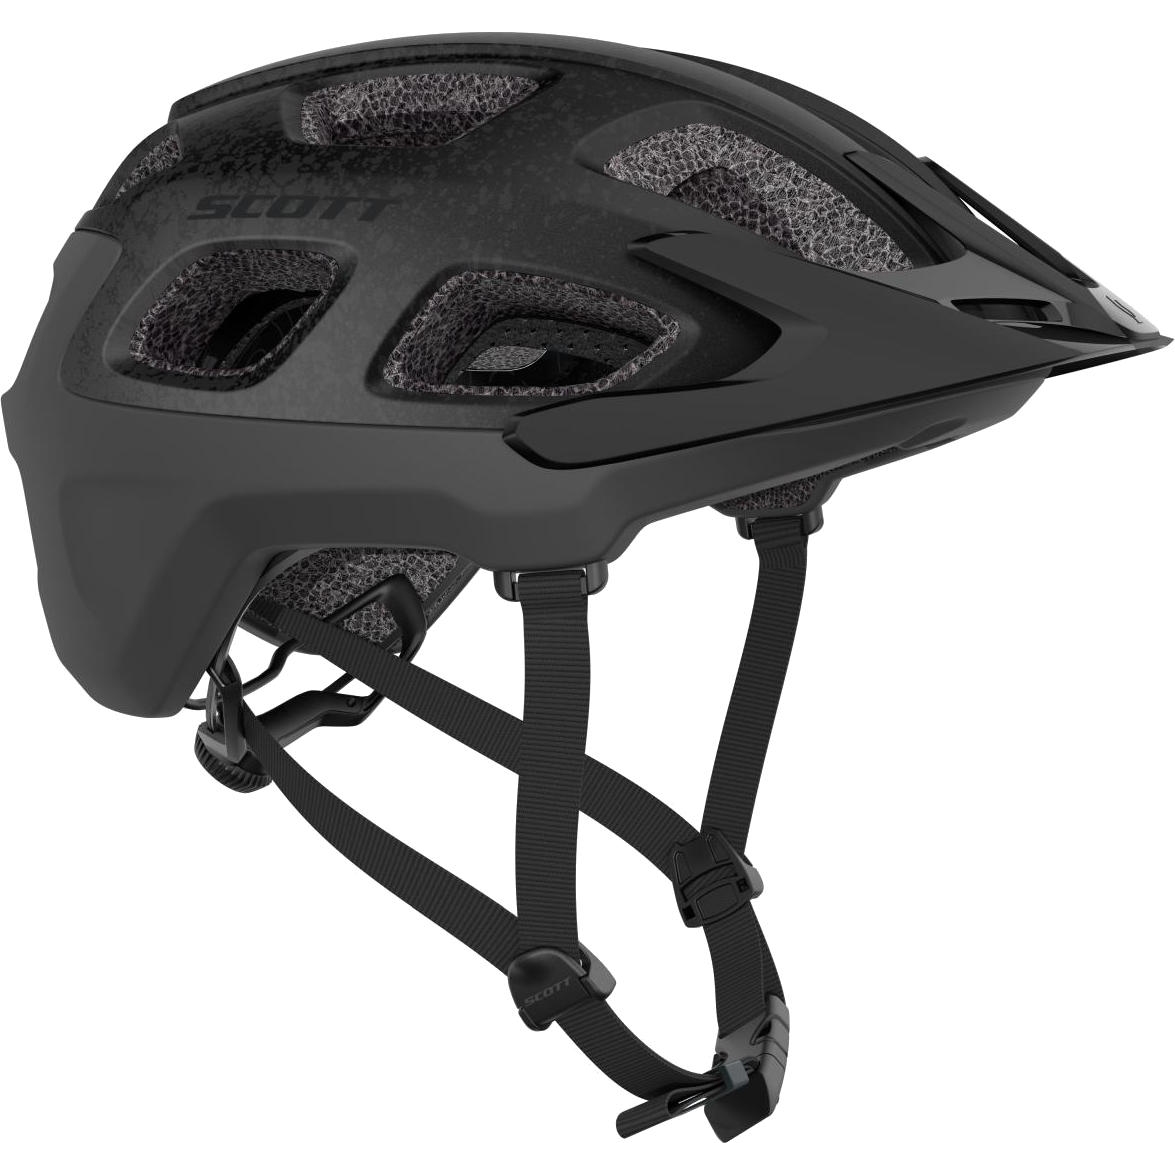 Produktbild von SCOTT Vivo Plus (CE) Helm - stealth black